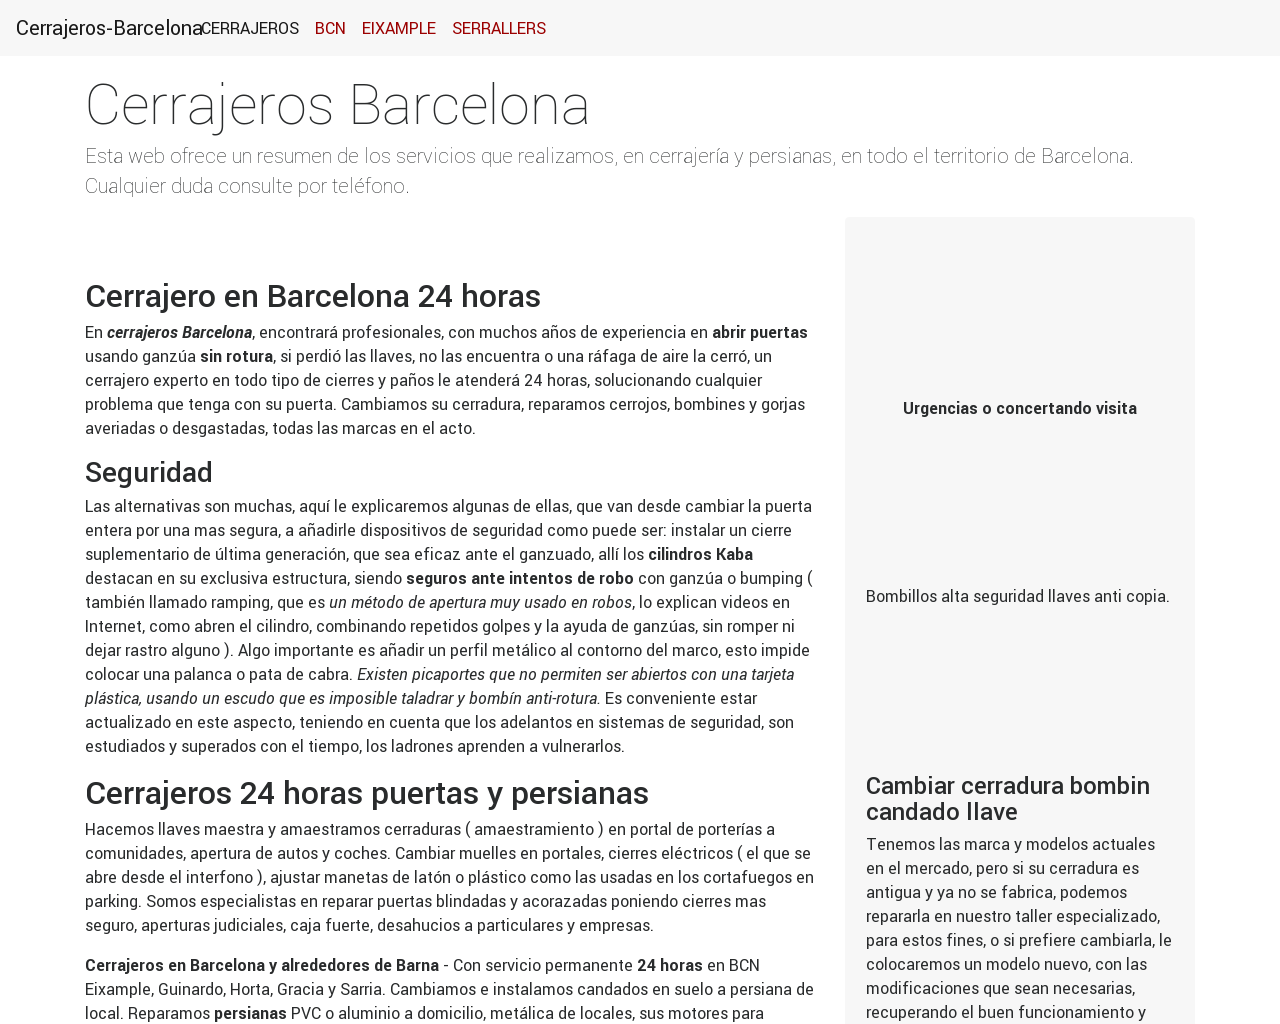 El sitio de la imagen cerrajeros-barcelona.com en 1280x1024